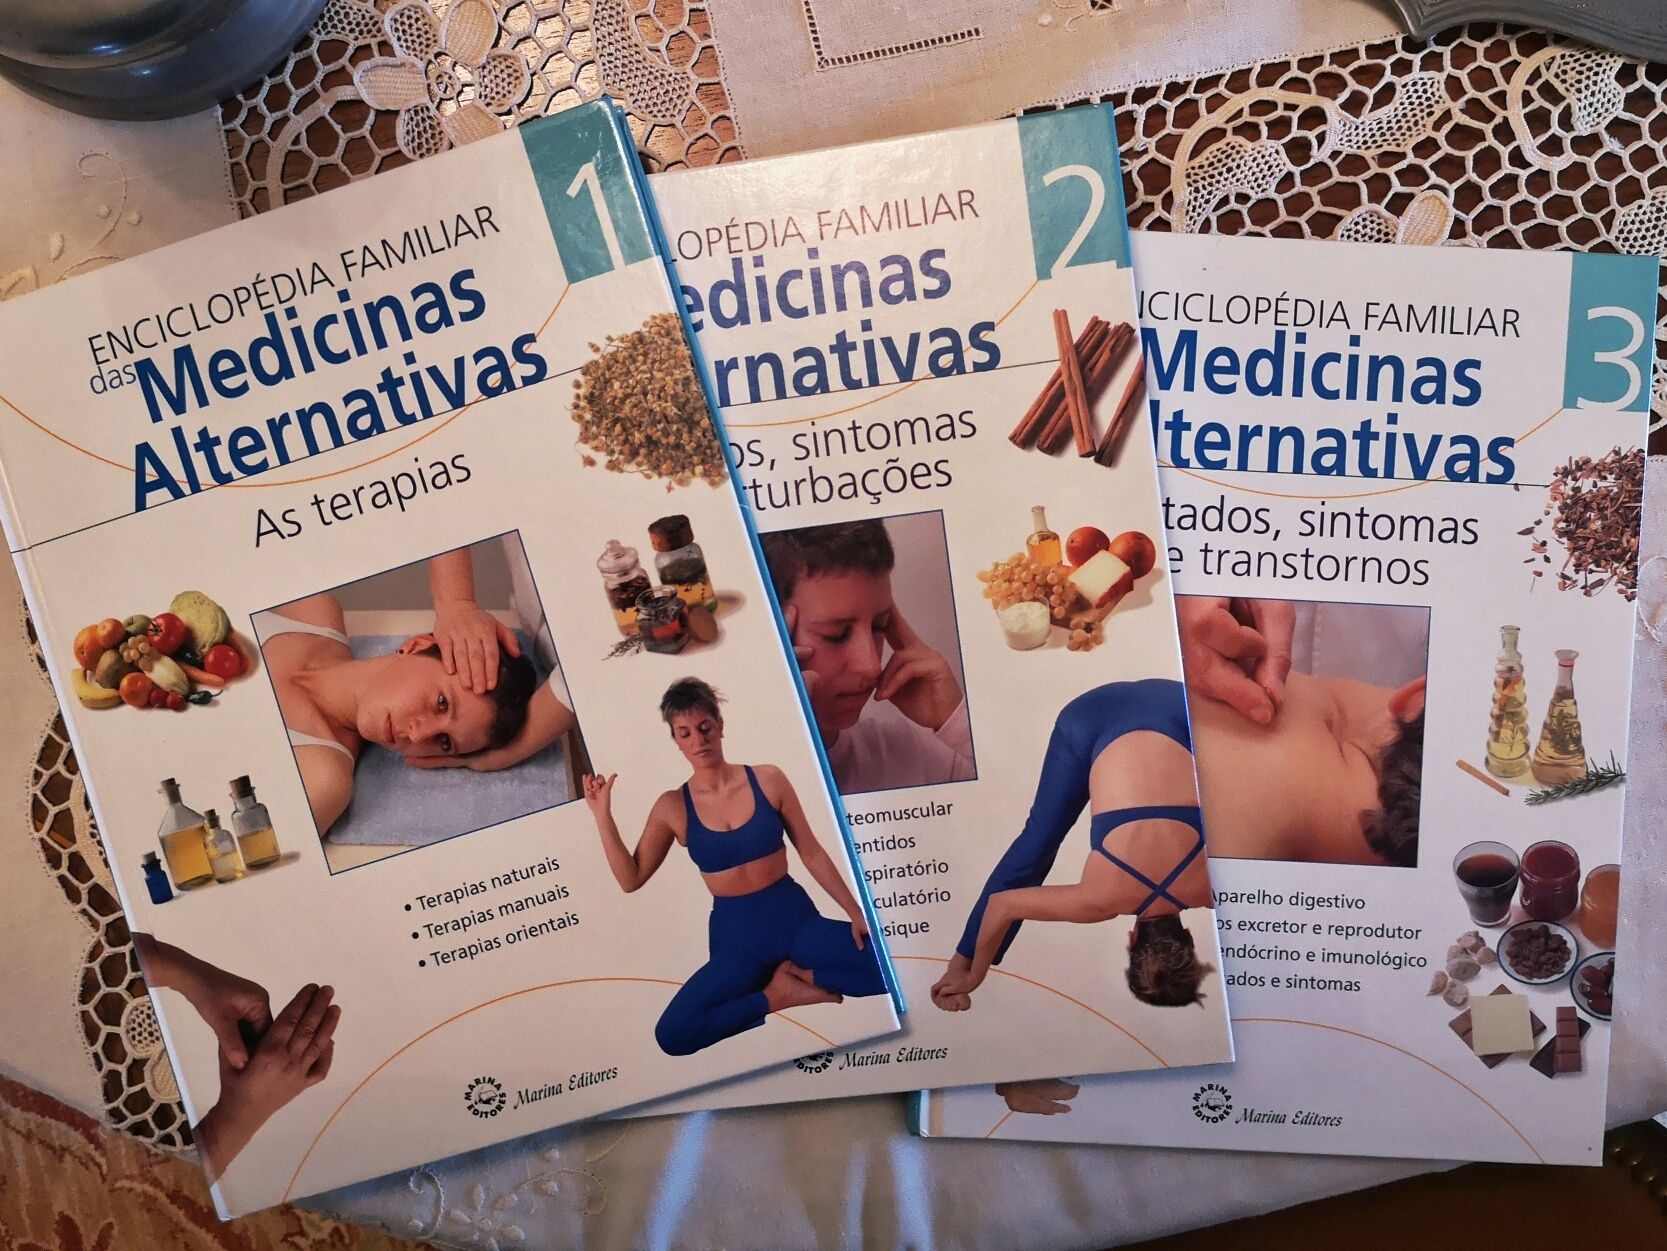 Medicinas alternativas - homeopatia, massagem, ioga, fitoterapia, etc